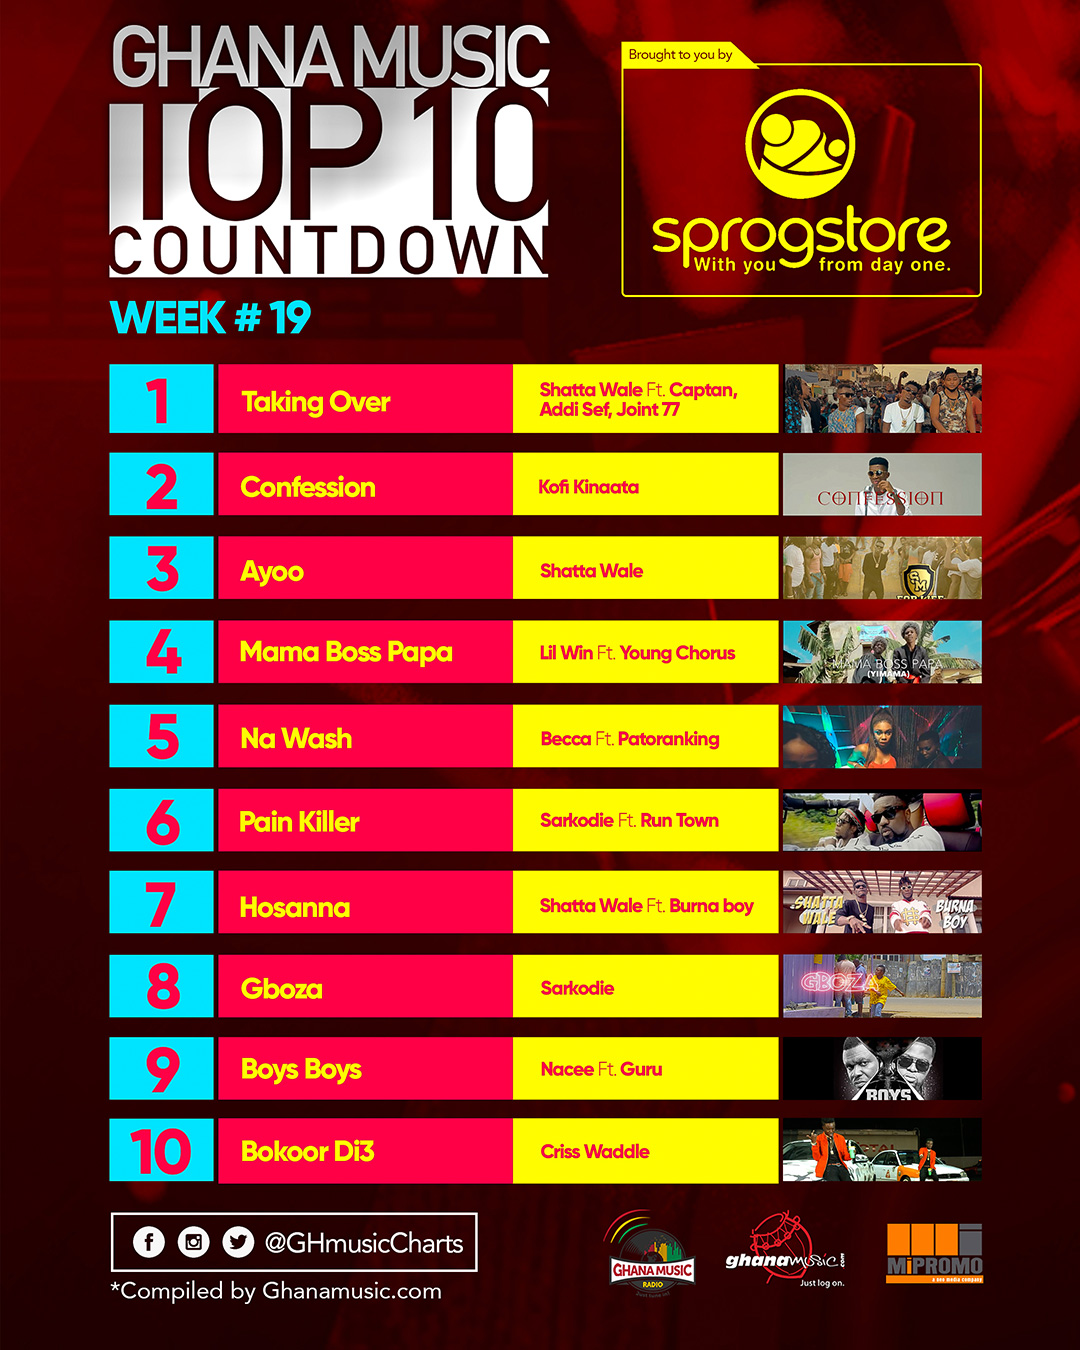 Week #20: Week ending Saturday, May 13th, 2017. Ghana Music Top 10 Countdown.